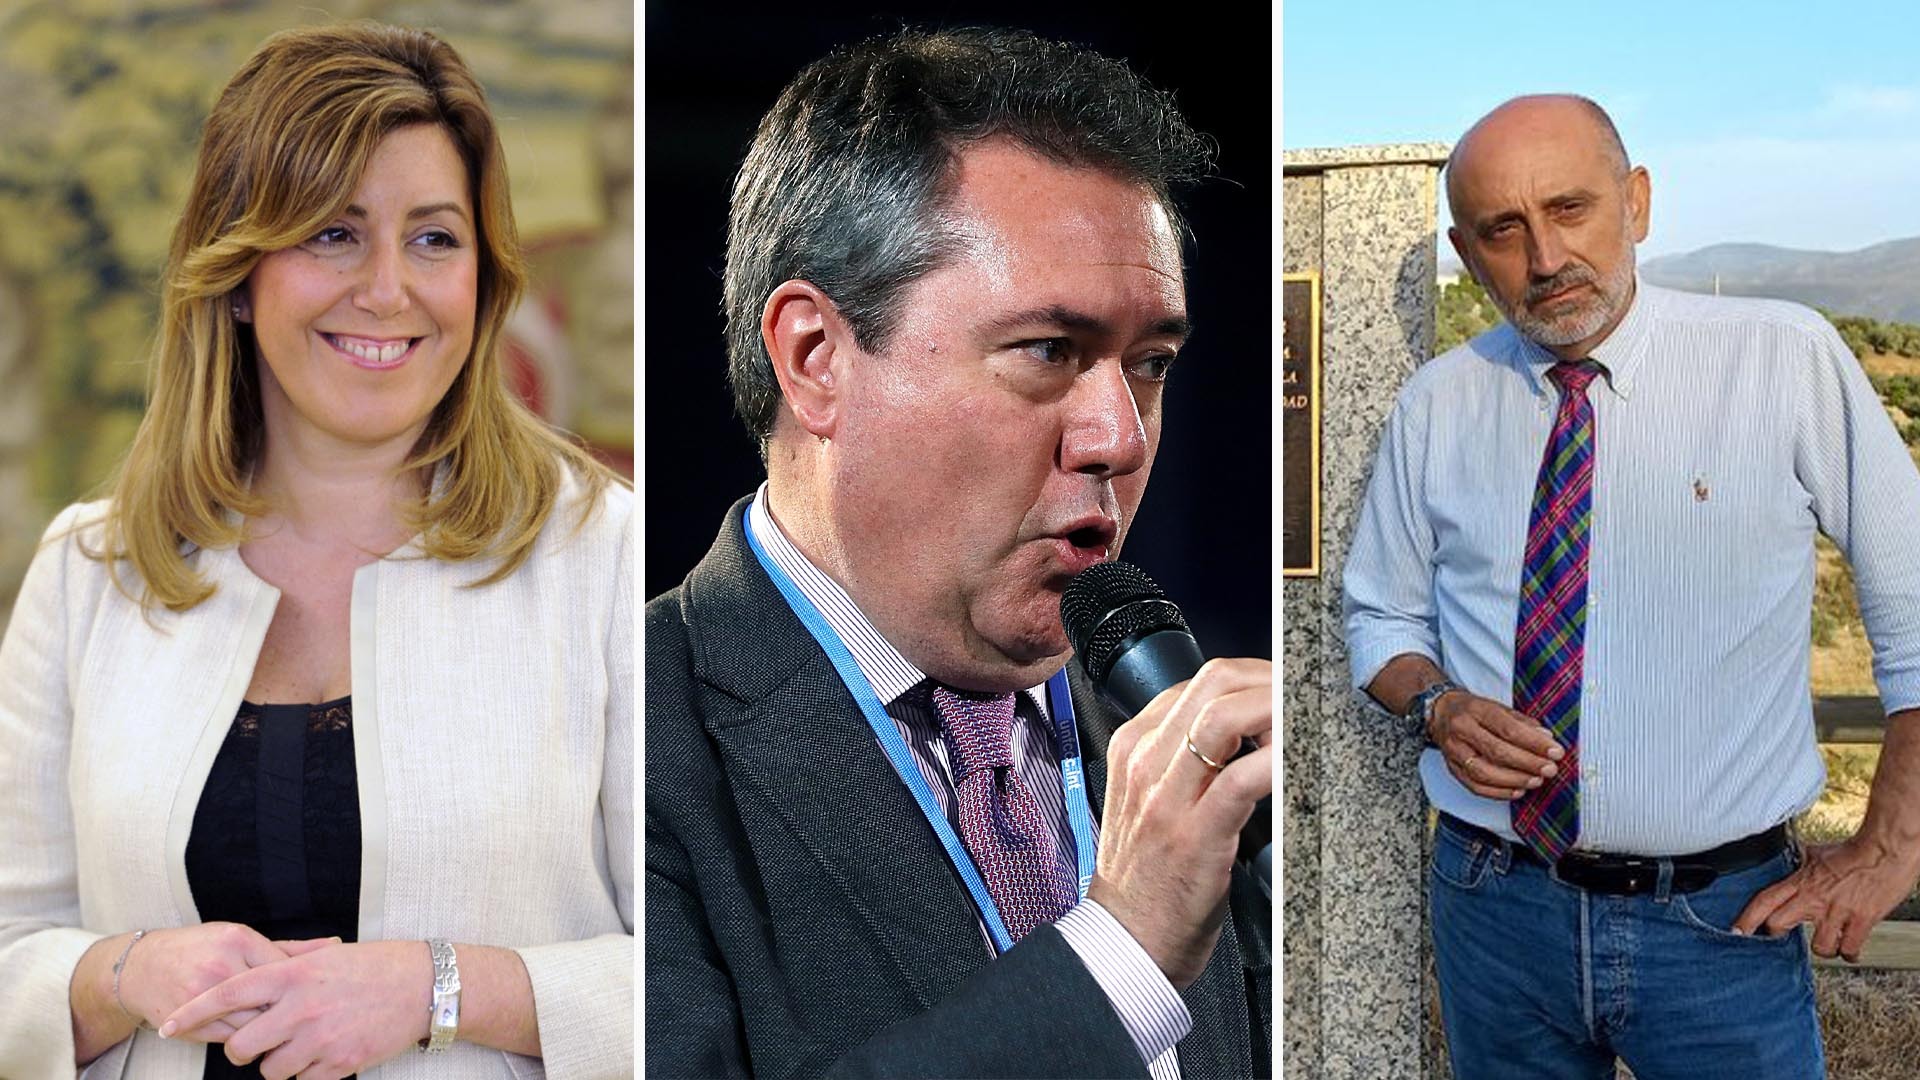 EN DIRECTO: Debate entre Susana Díaz, Juan Espadas y Luis Ángel Hierro en las primarias del PSOE